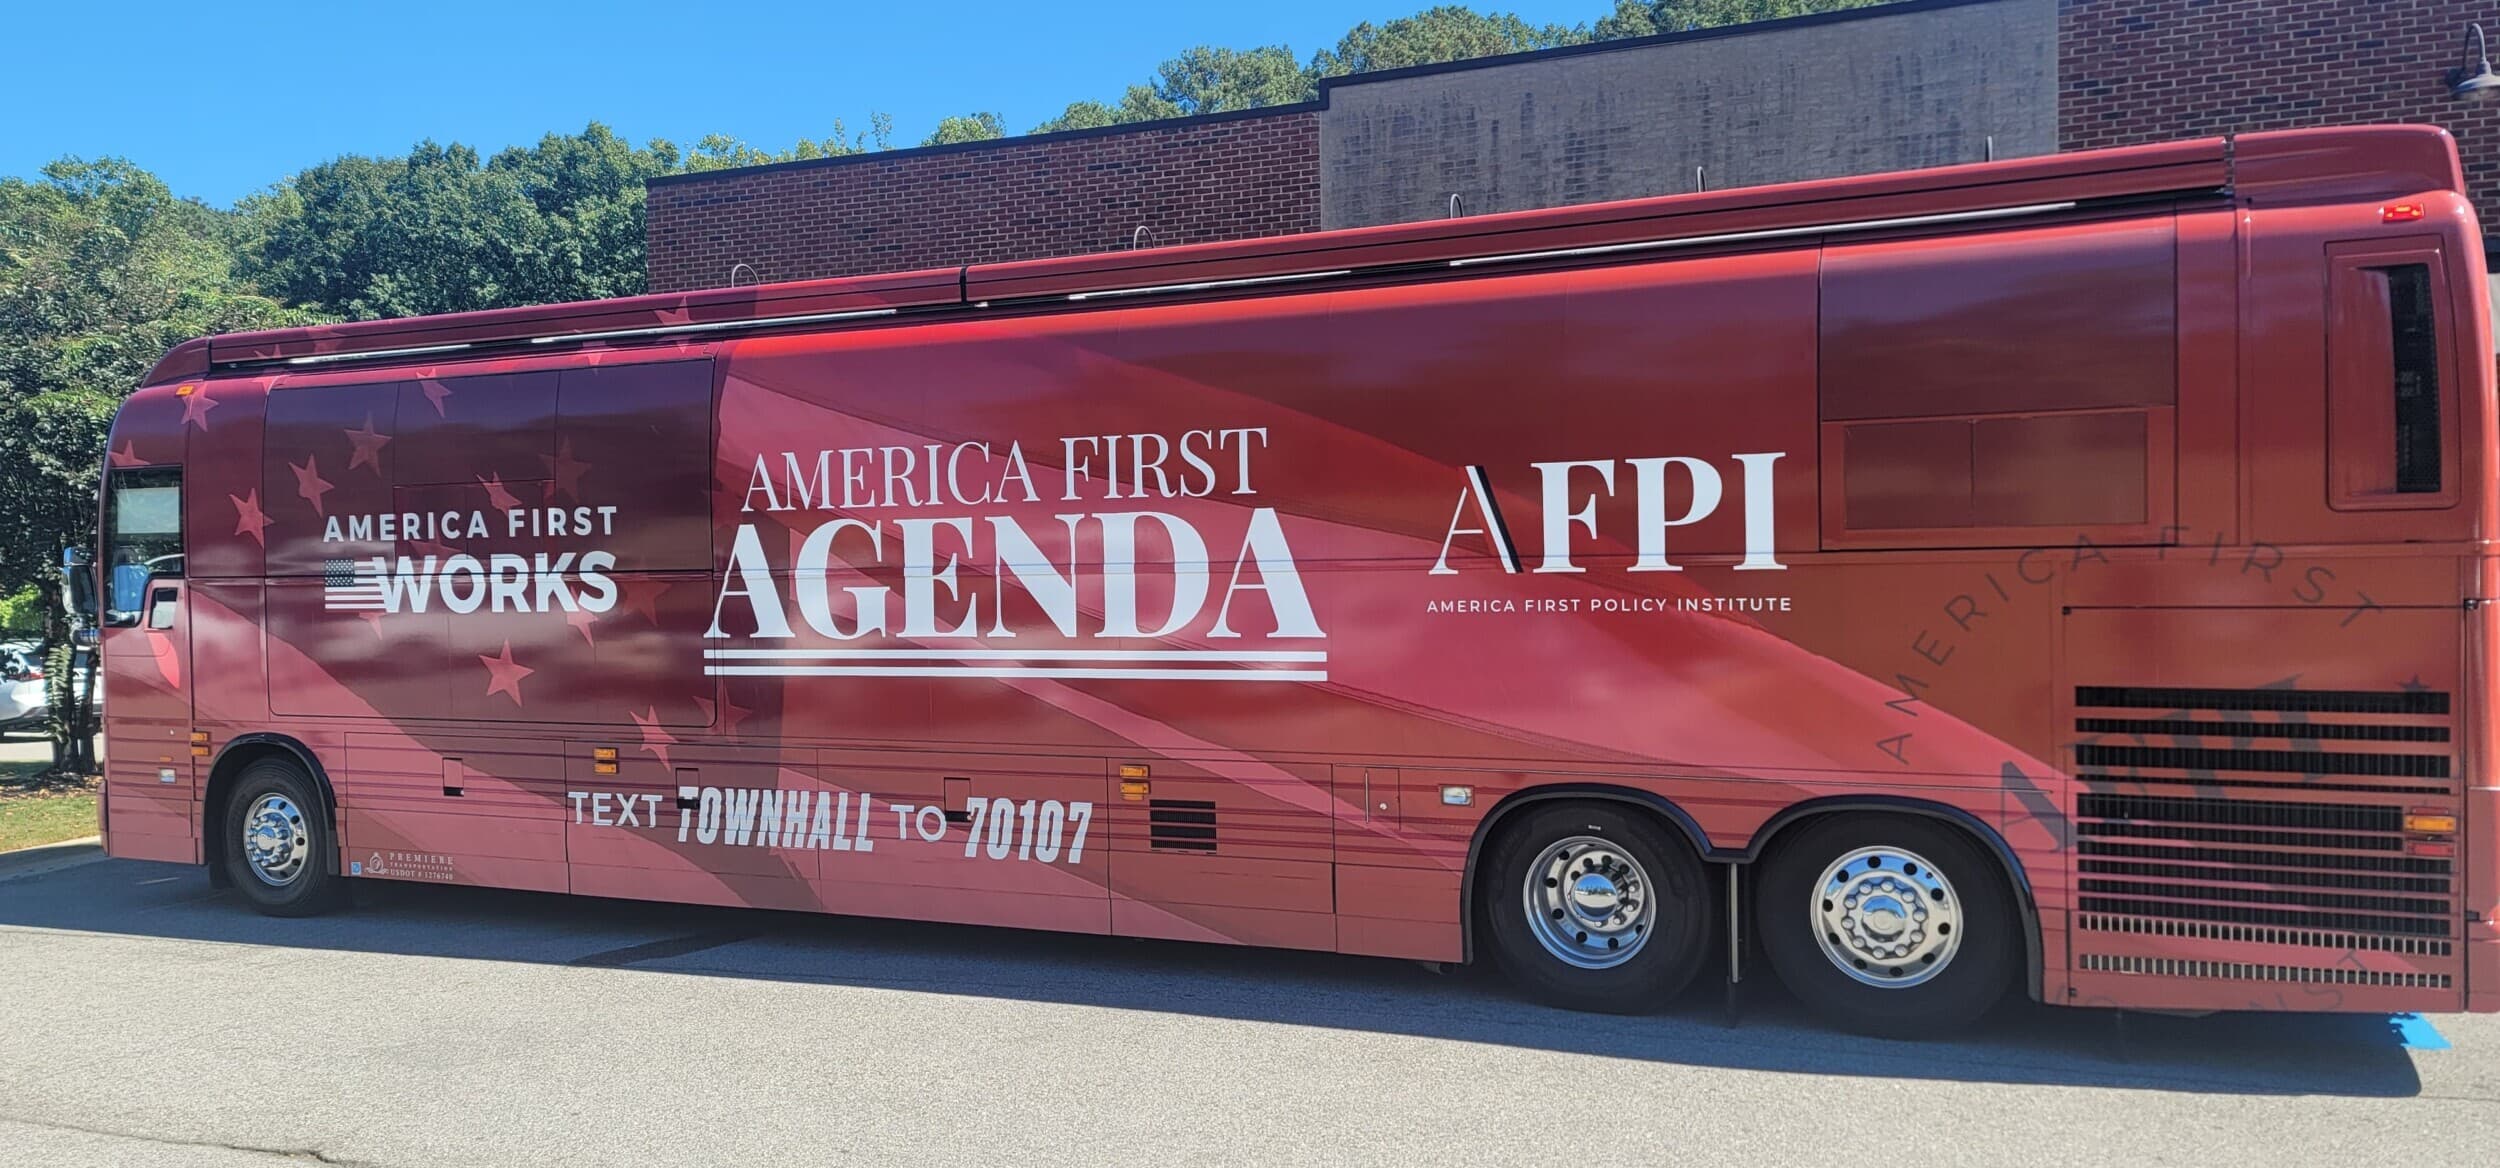 America First Agenda Bus Tour. Photo: Erica Thomas.